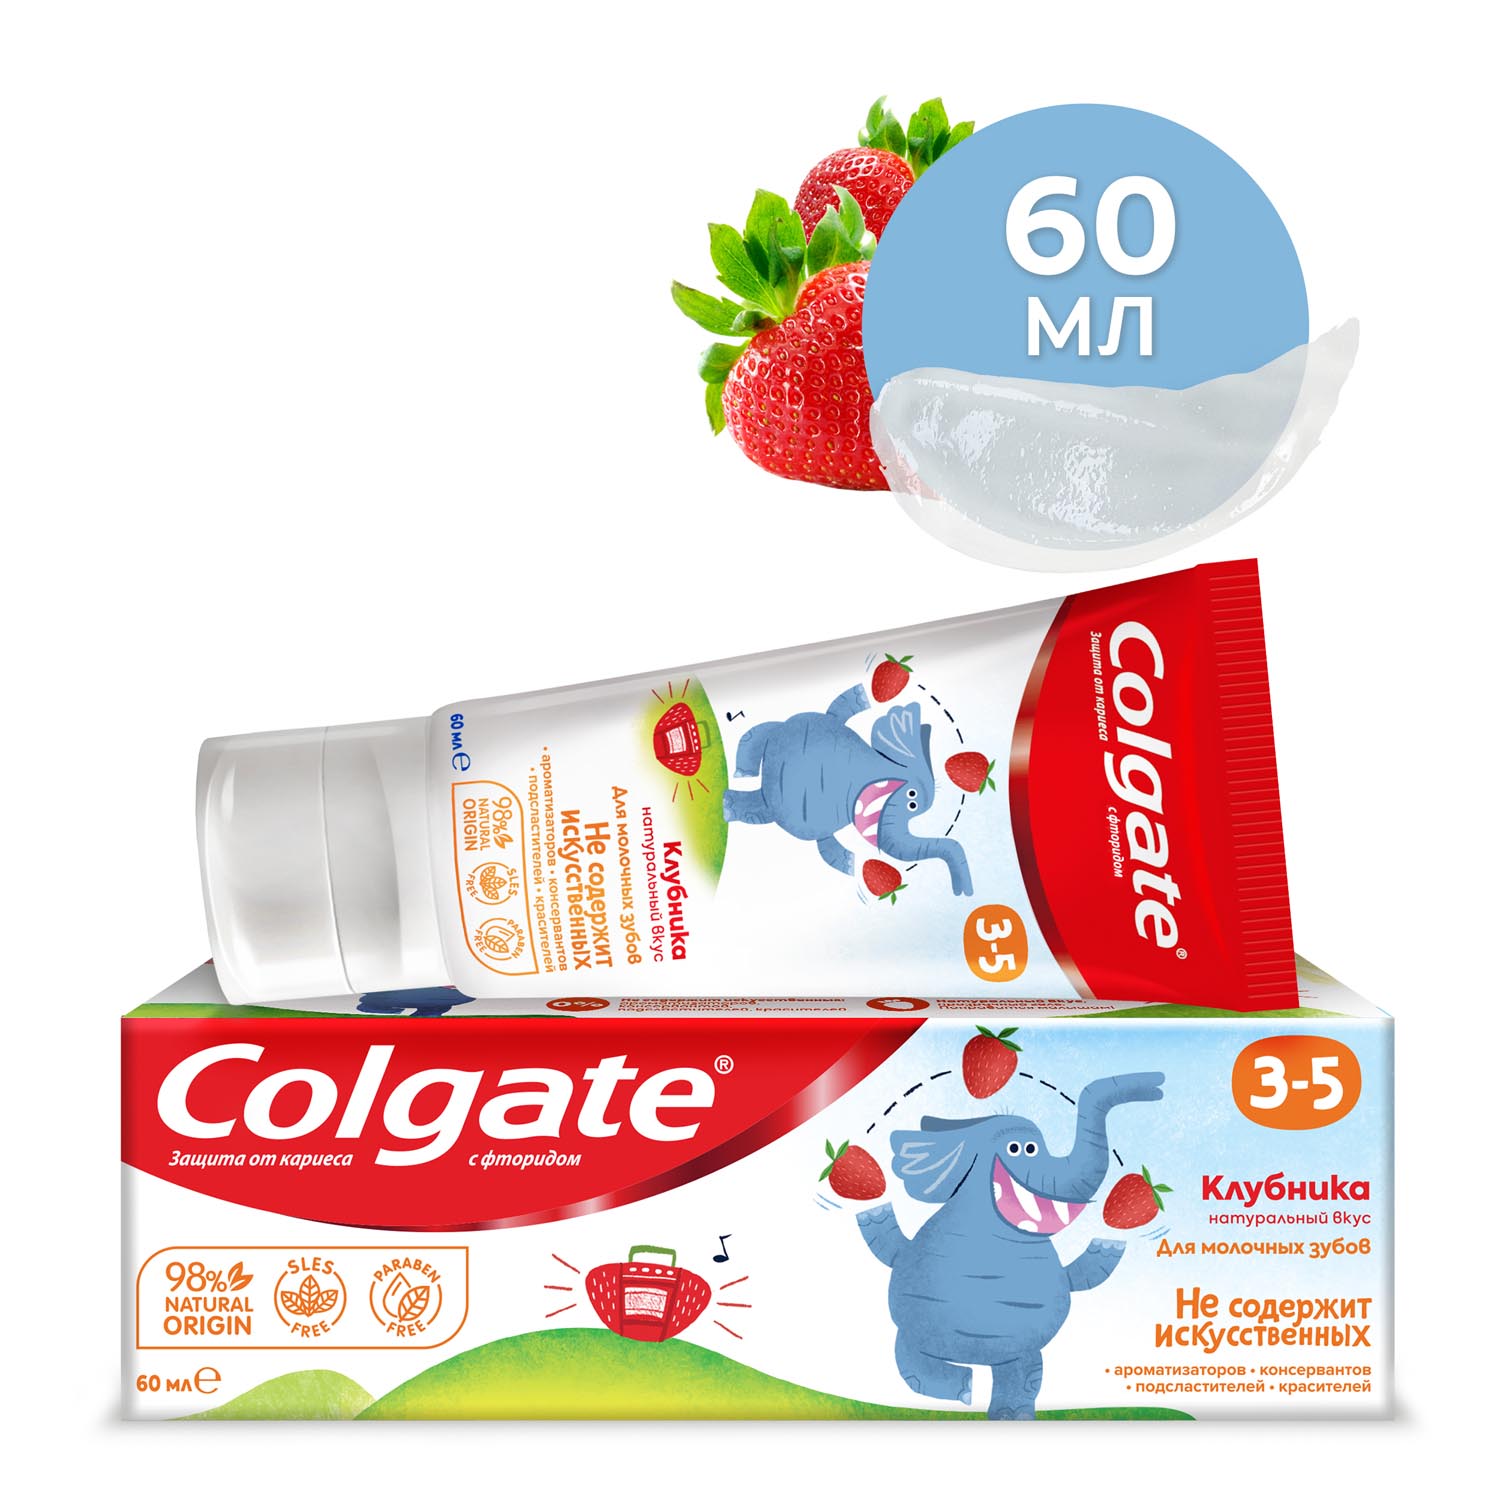 Зубная паста детская Colgate 3-5, защита от кариеса, с фторидом, для детей от 3 до 5 лет, со вкусом клубники, 60 мл kids детская гелевая зубная паста ледяной арбуз без фтора 65 г